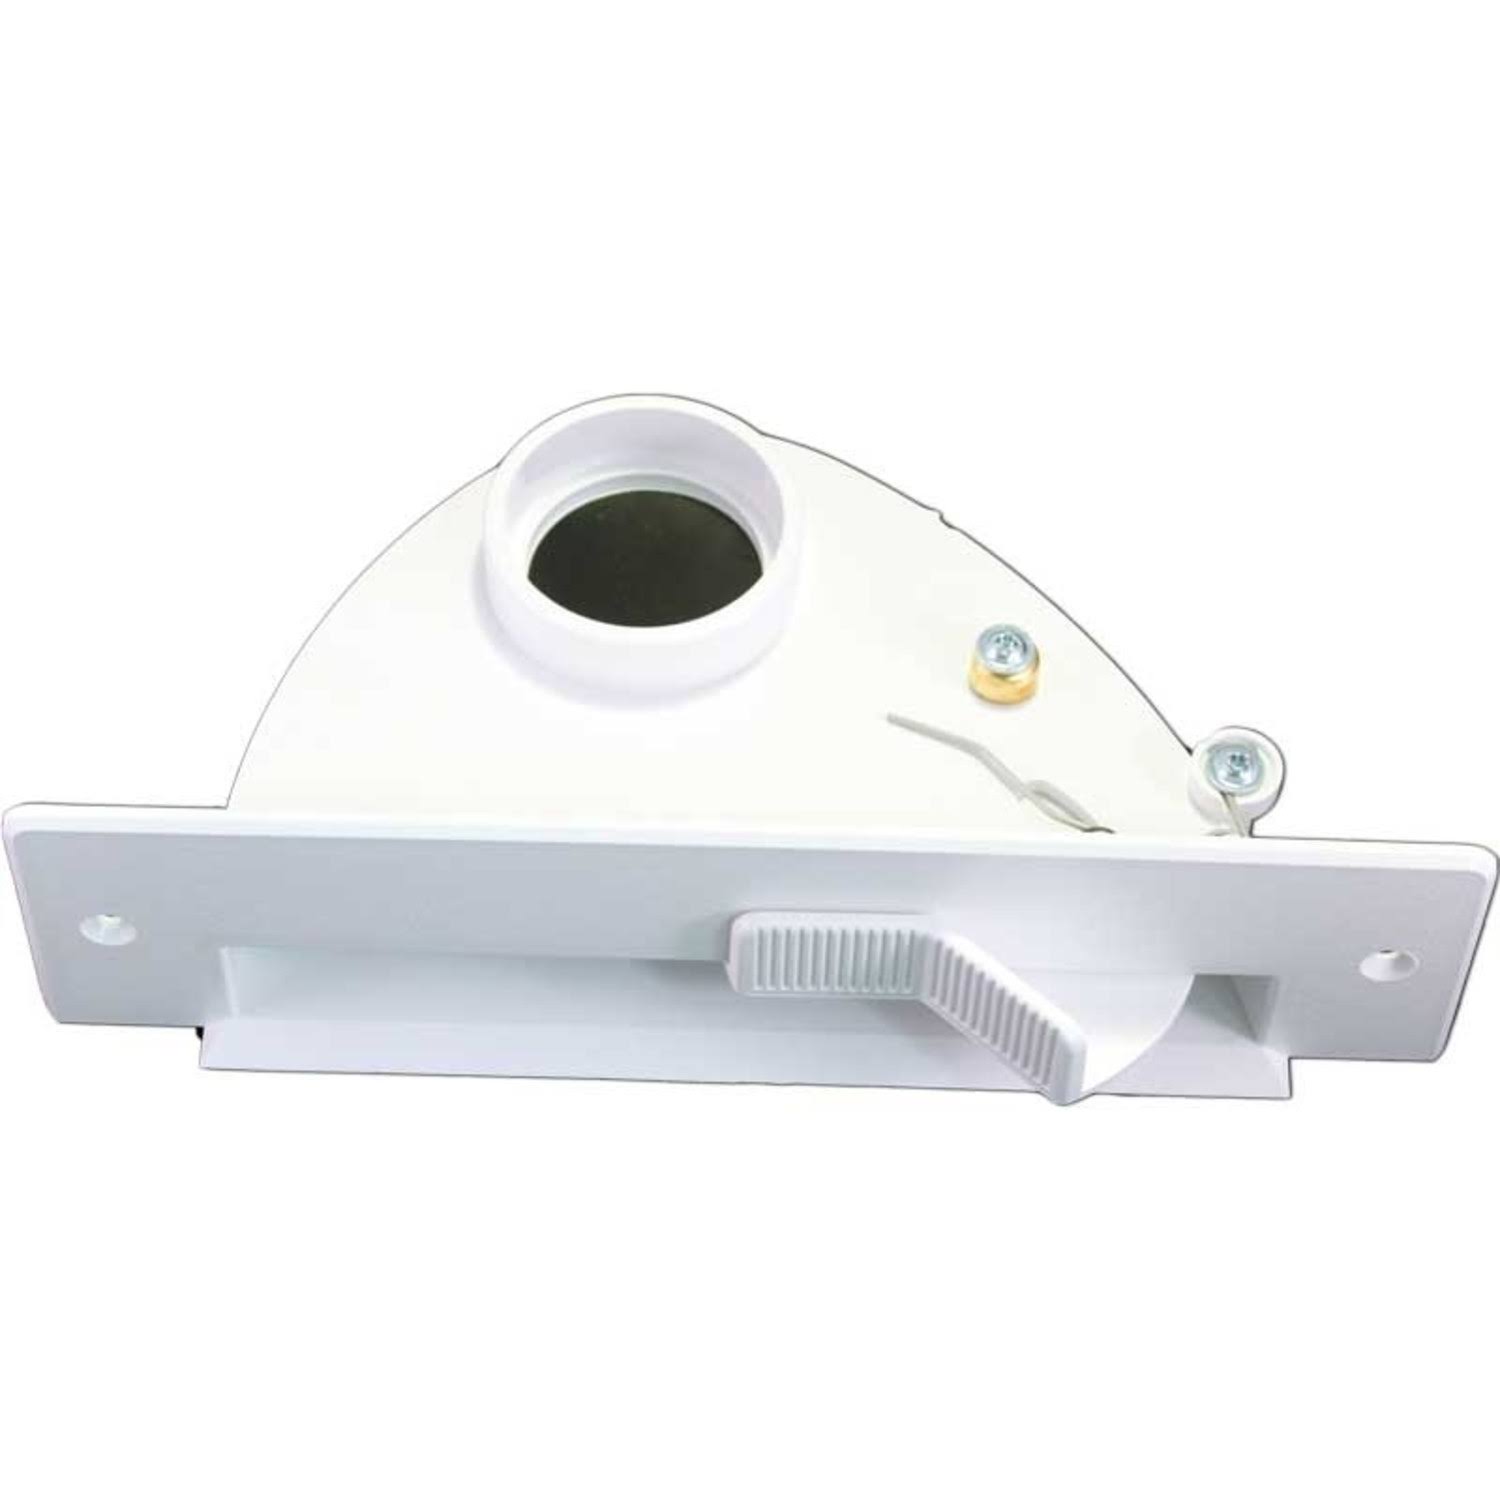 Electrolux Central Vacuum Automatic Dustpan - White